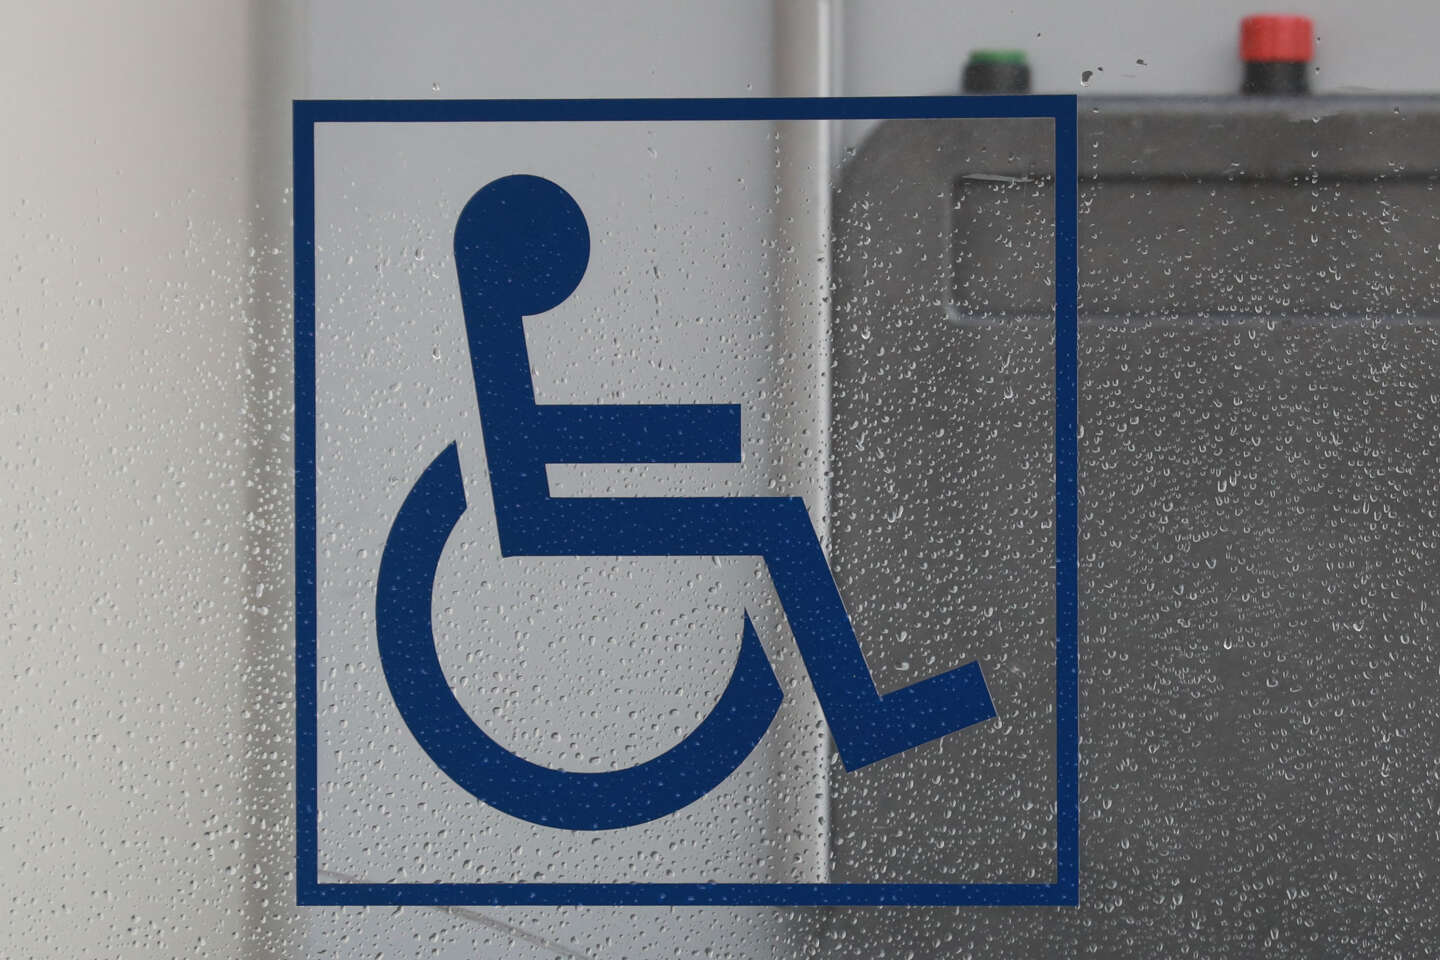 La difficile acceptation du handicap au travail : « Je ne me sentais pas handicapée, j’étais juste dans le déni »